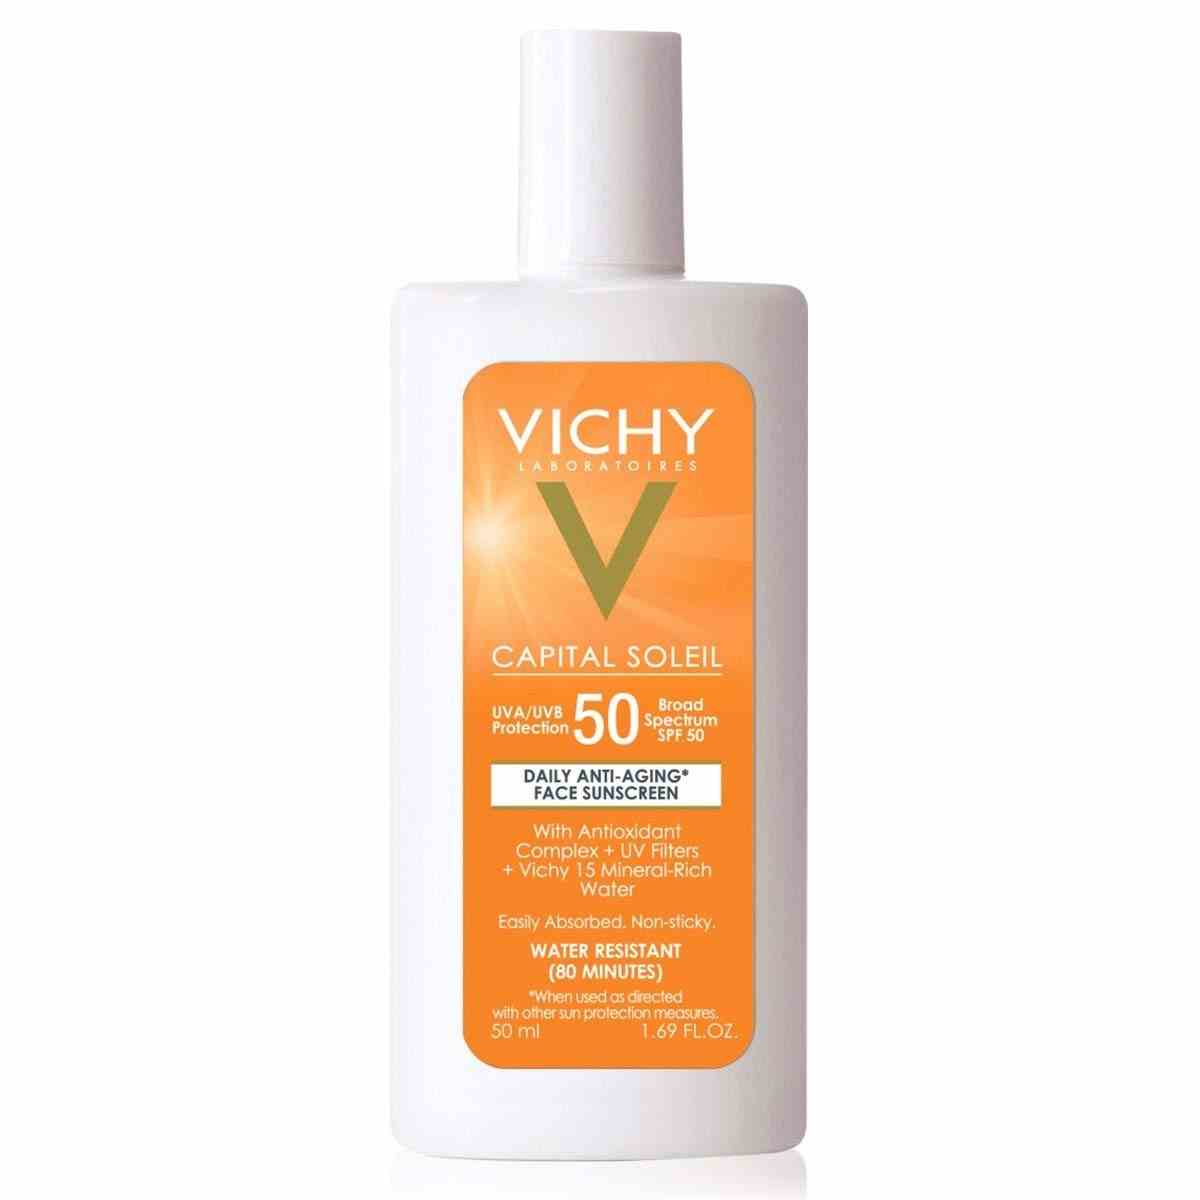 Vichy Capital Soleil Face Sonnencreme SPF 50 auf weißem Hintergrund